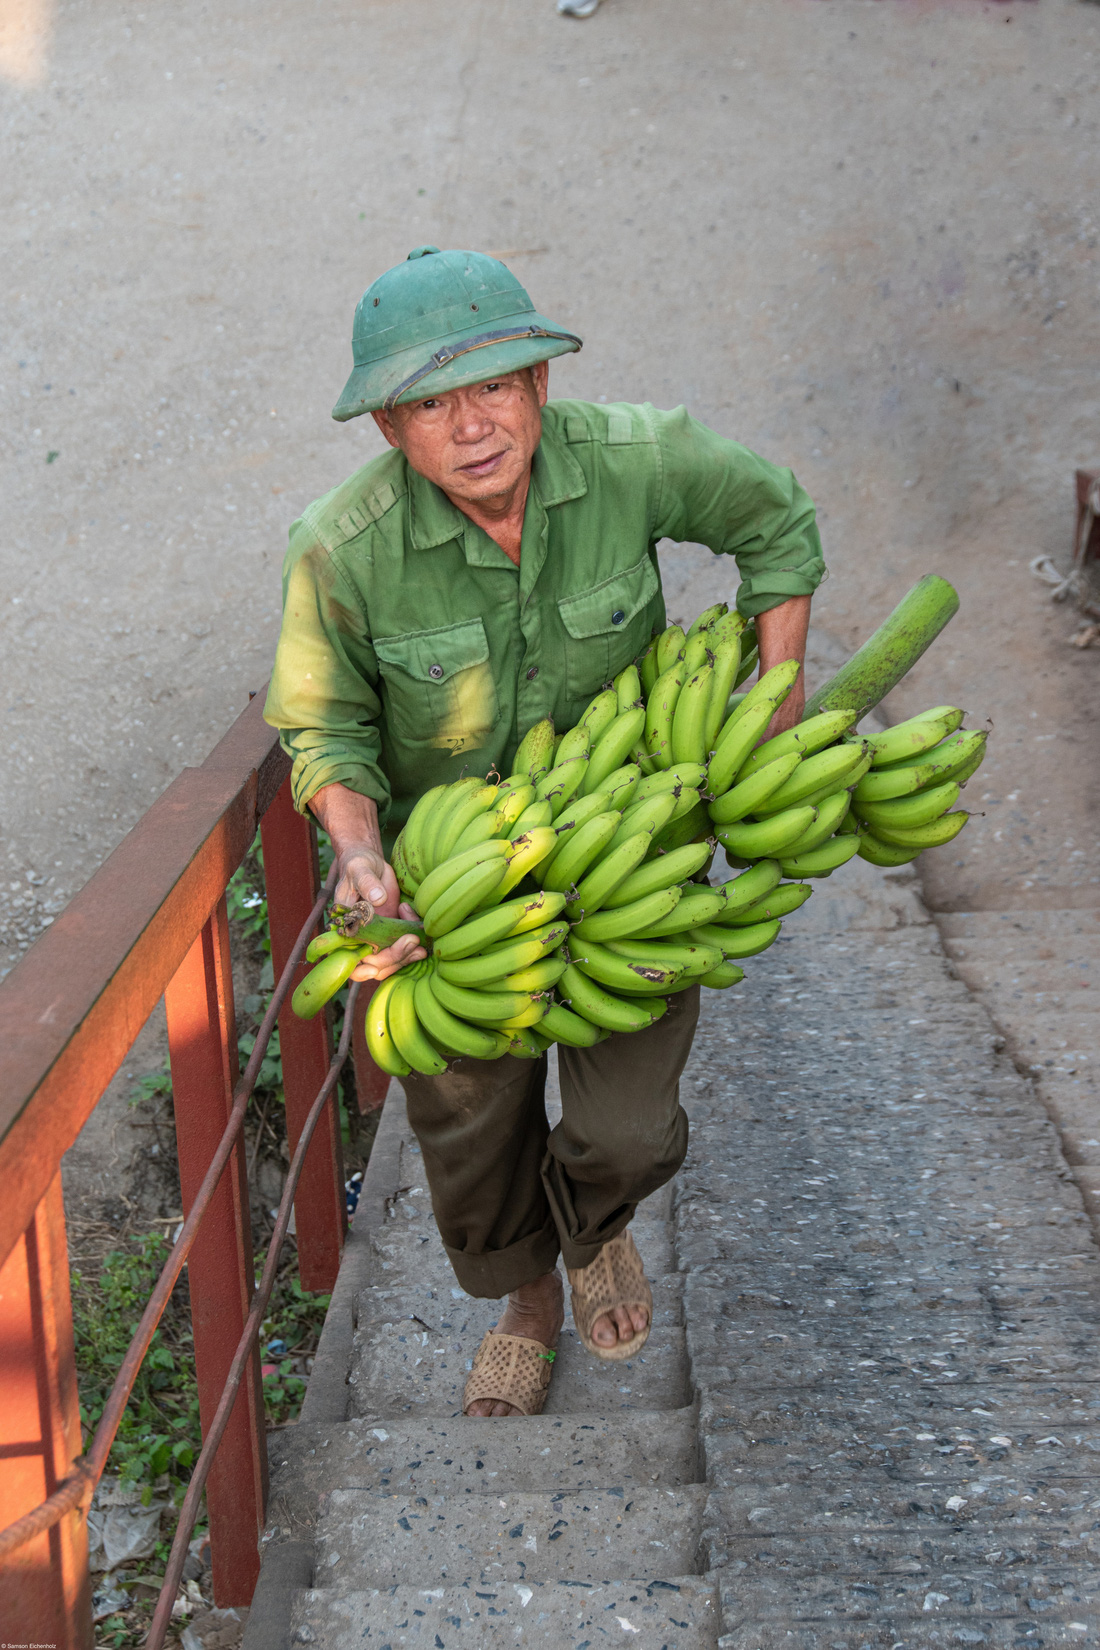 "Dưới cây cầu bắc qua sông Hồng ở Hà Nội, Việt Nam, người dân đã biến đất công thành những khu vườn trù phú. Khi tôi bước xuống cầu thang để khám phá góc khuất này của thành phố, tôi bắt gặp người đàn ông này và ấn tượng với đôi mắt có hồn của ông", tác giả Sam Eichenholz chú thích bức ảnh "Vận chuyển chuối" đoạt giải nhất hạng mục Young 13-17